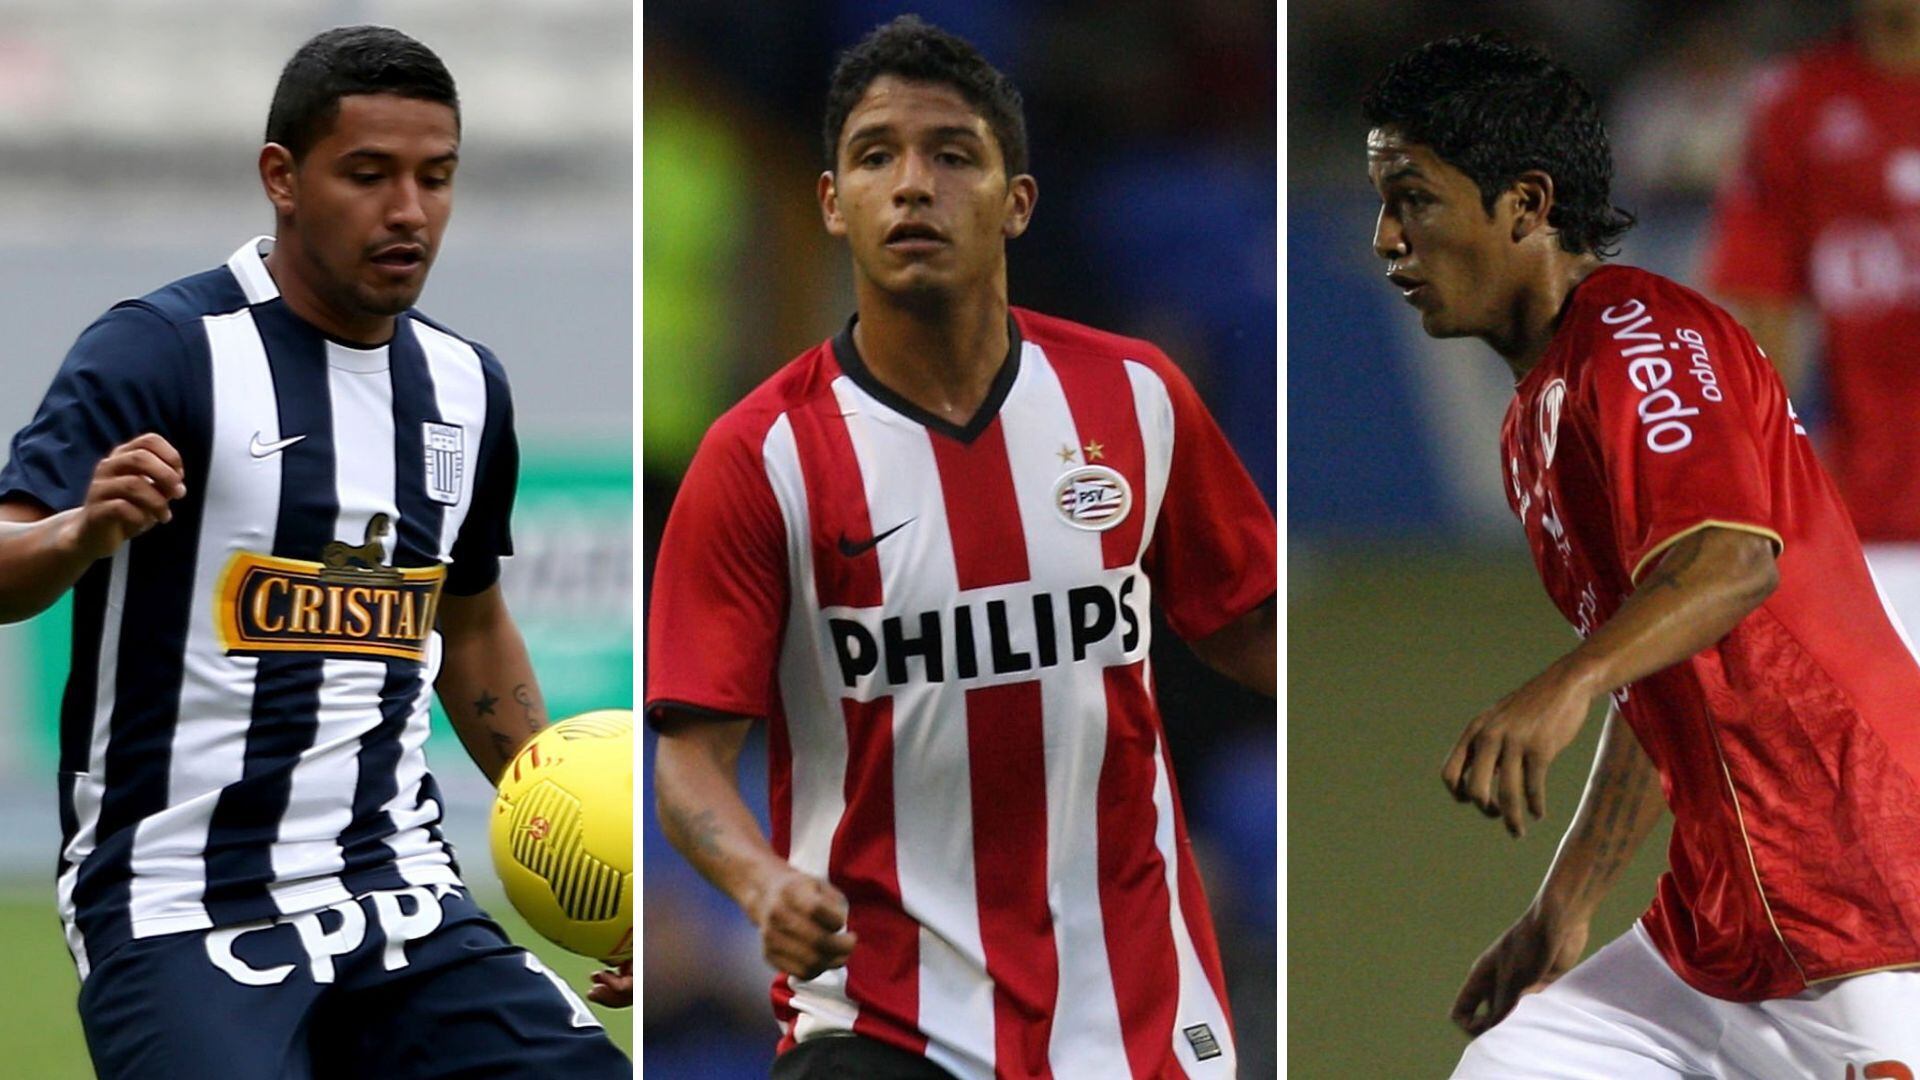 Reimond Manco jugó por Alianza Lima, PSV, Juan Aurich, entre otros clubes. Con los cuales consiguió un total de 2 títulos nacionales.